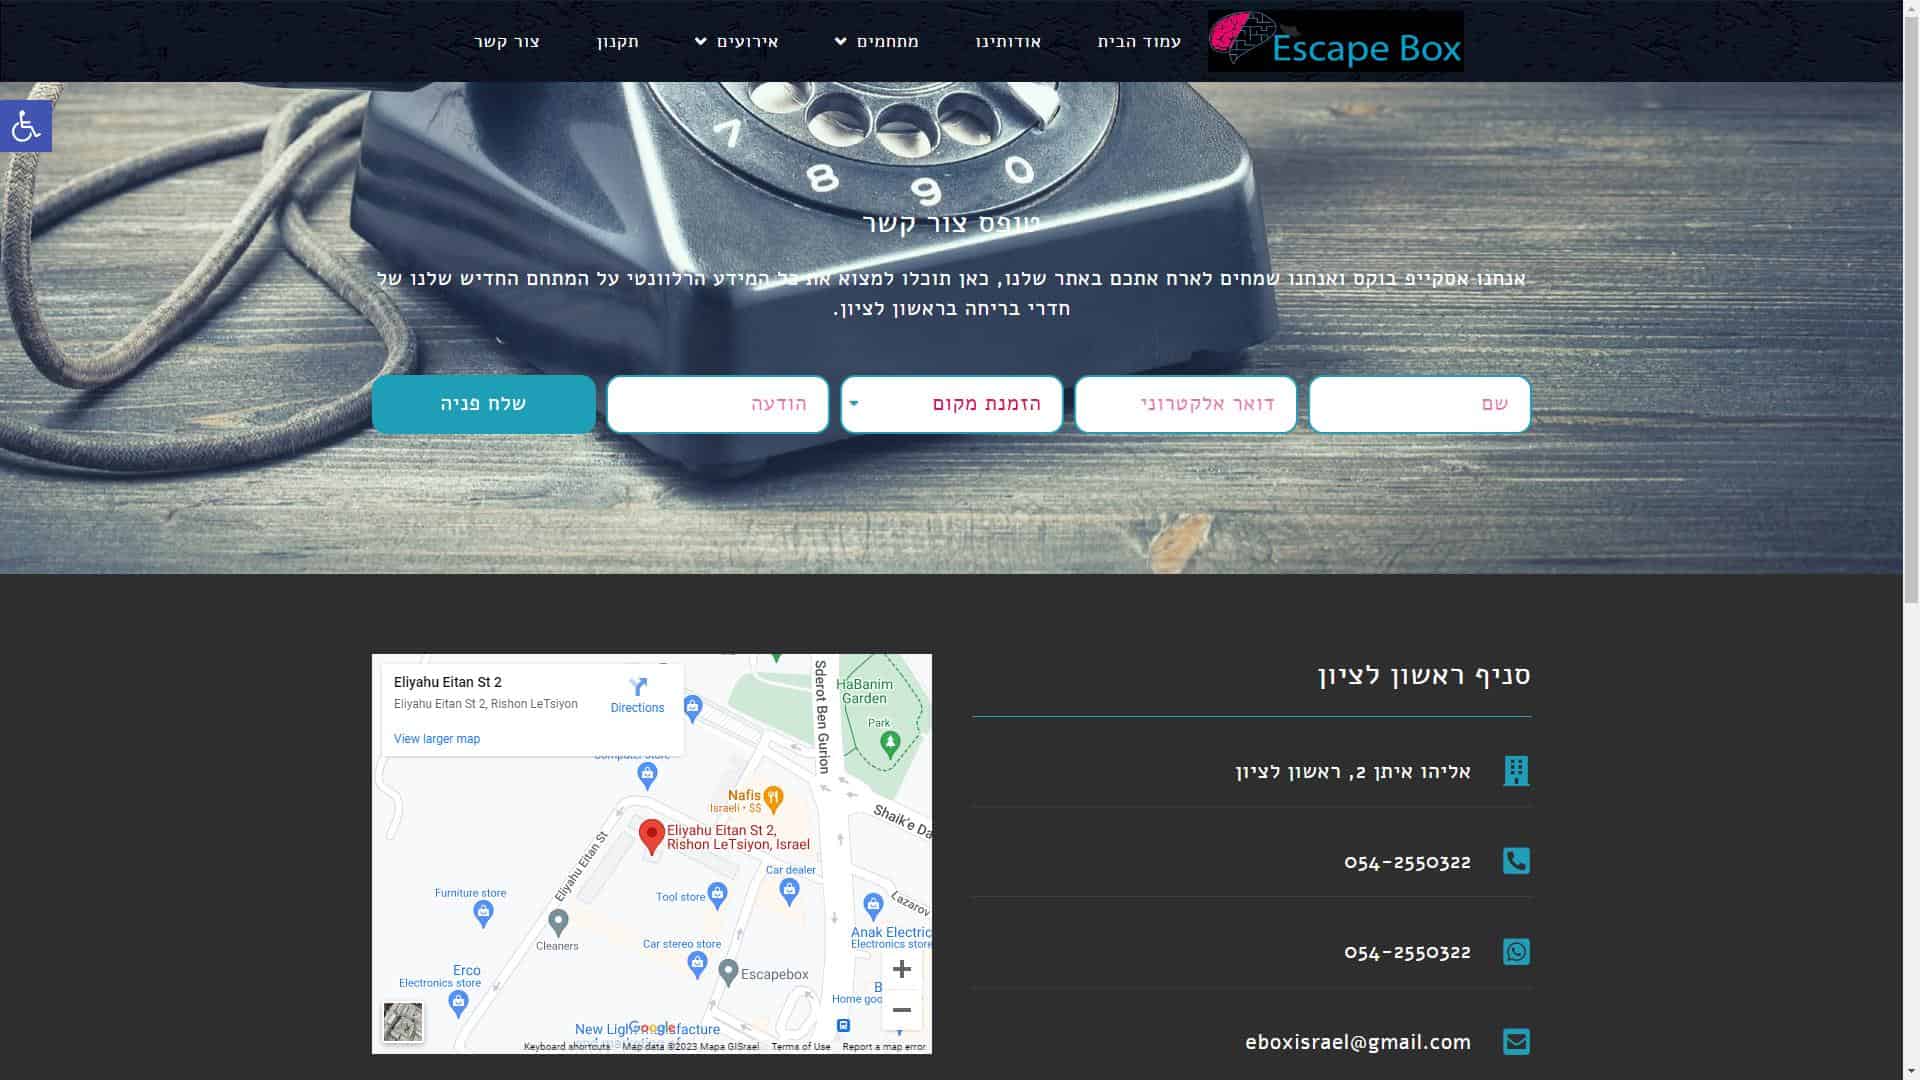 אסקייפ בוקס Escape Box טופס יצירת קשר צילום מסך